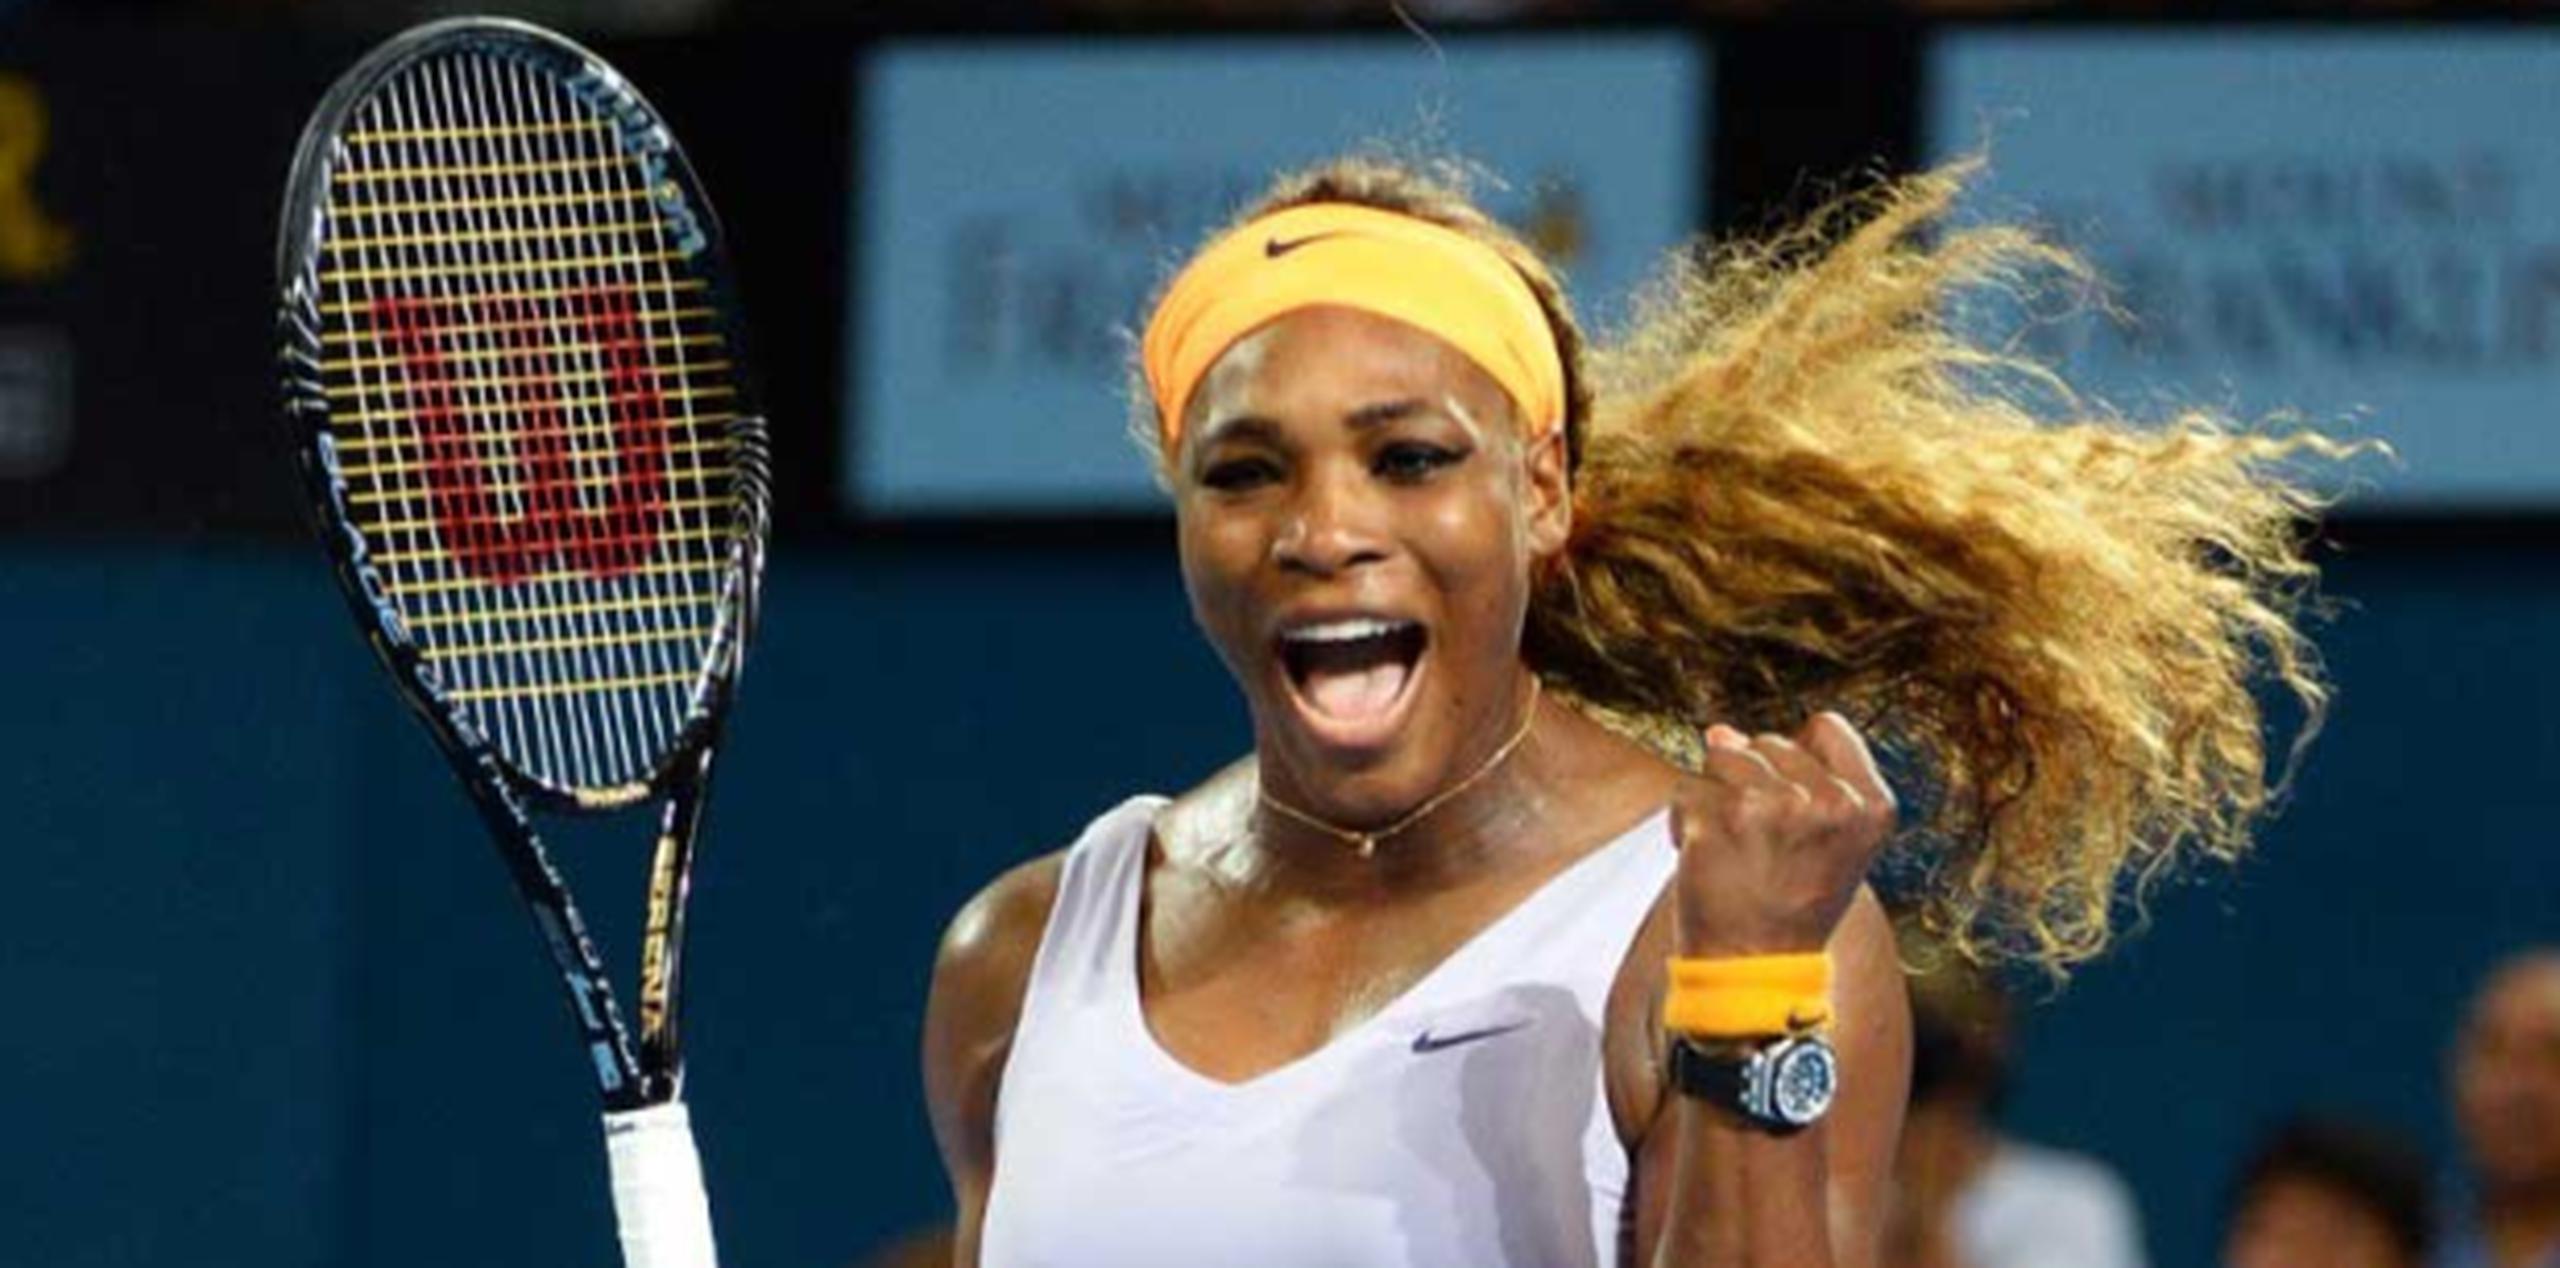 Serena Williams derrotó a Victoria Azarenka para revalidar su título en el torneo de Brisbane. (AFP / William West)